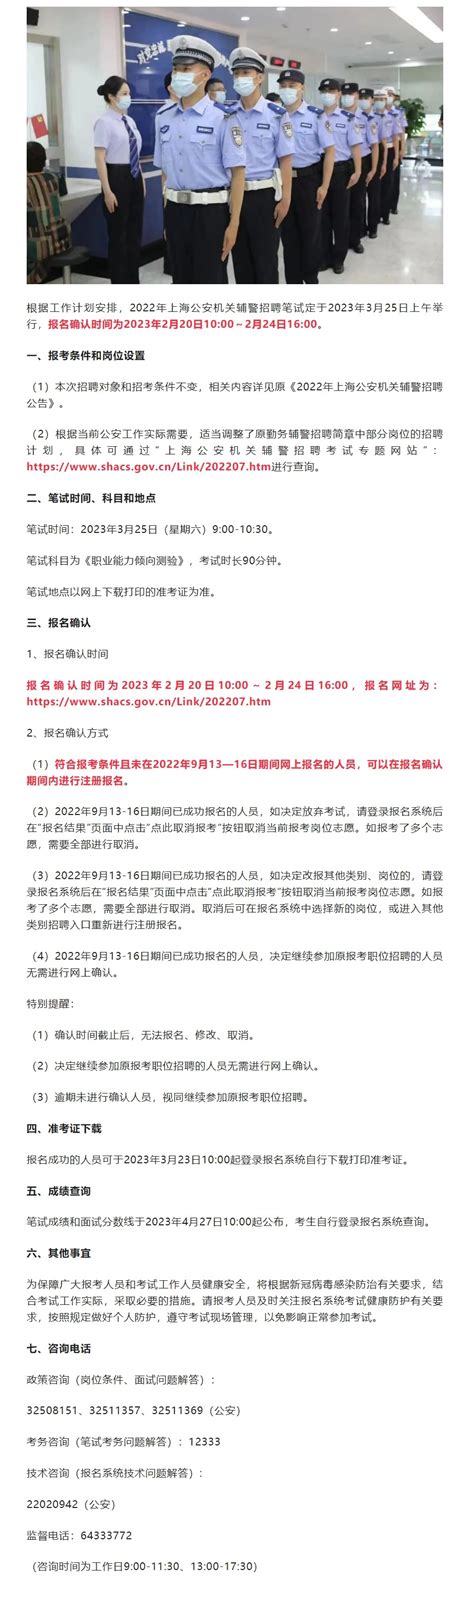 上海公安辅警2022年招聘已重启 2月20日至24日可报名确认